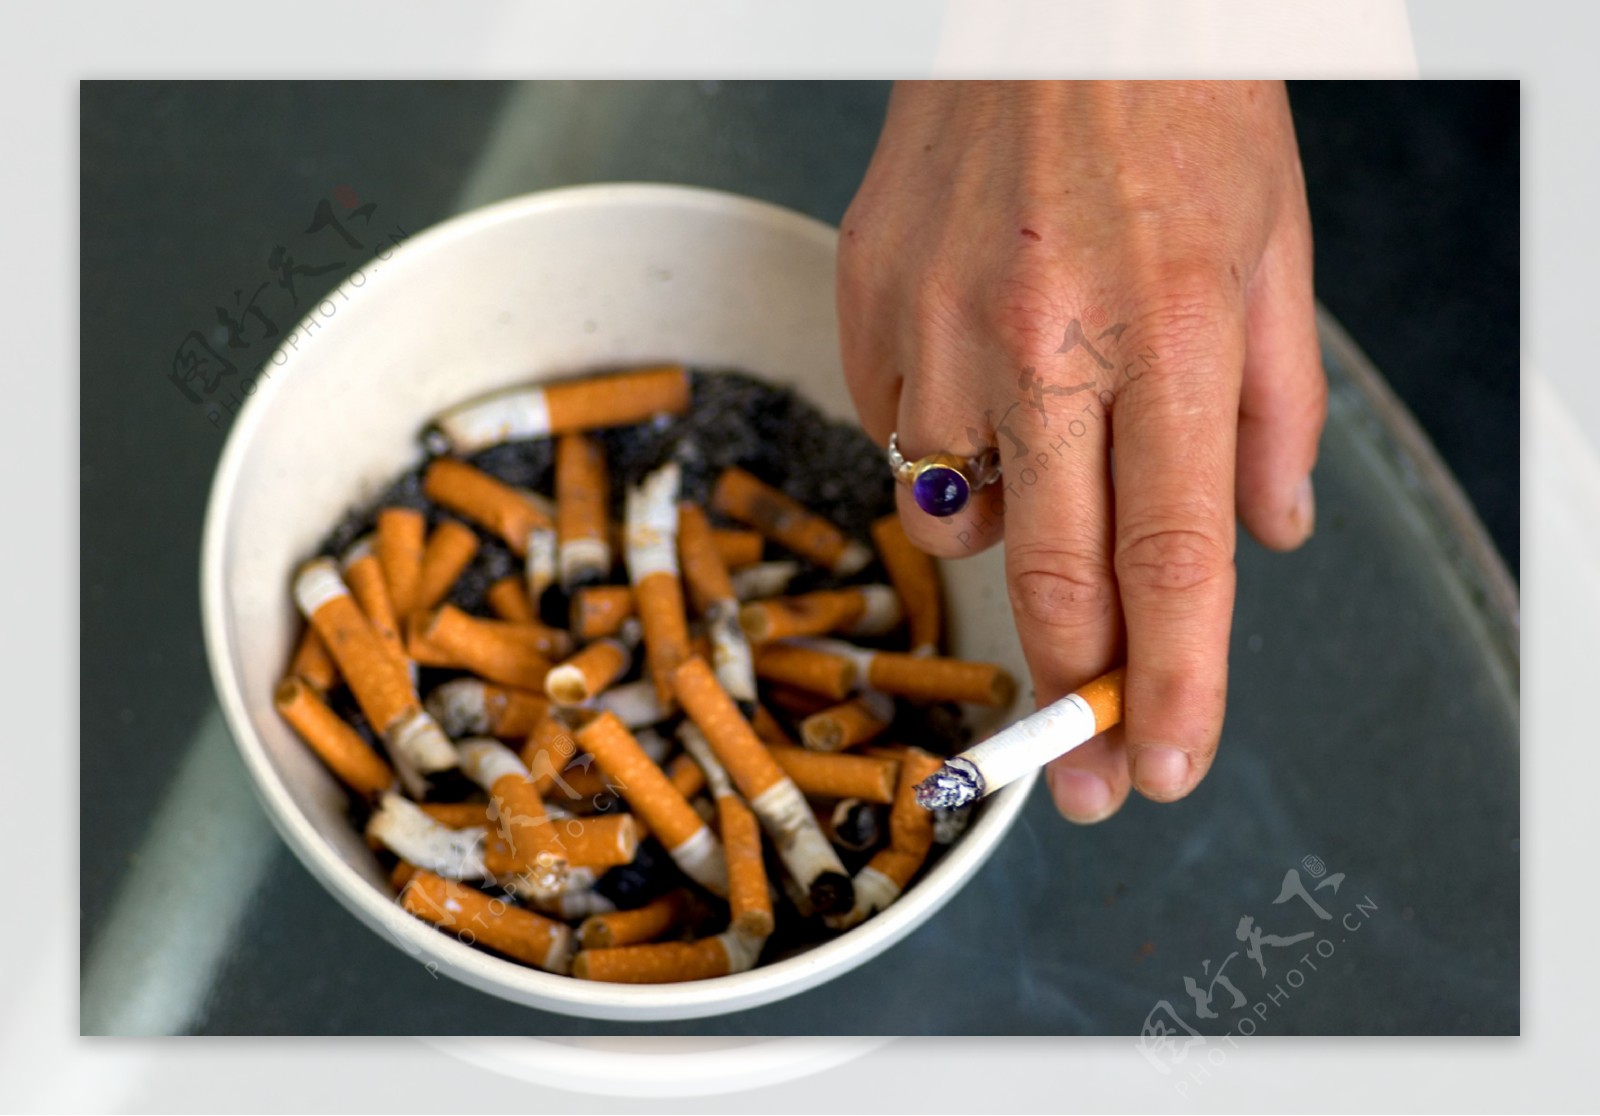 香烟迷绕火柴火机几根烟一盒烟烟头一排烟烟灰缸